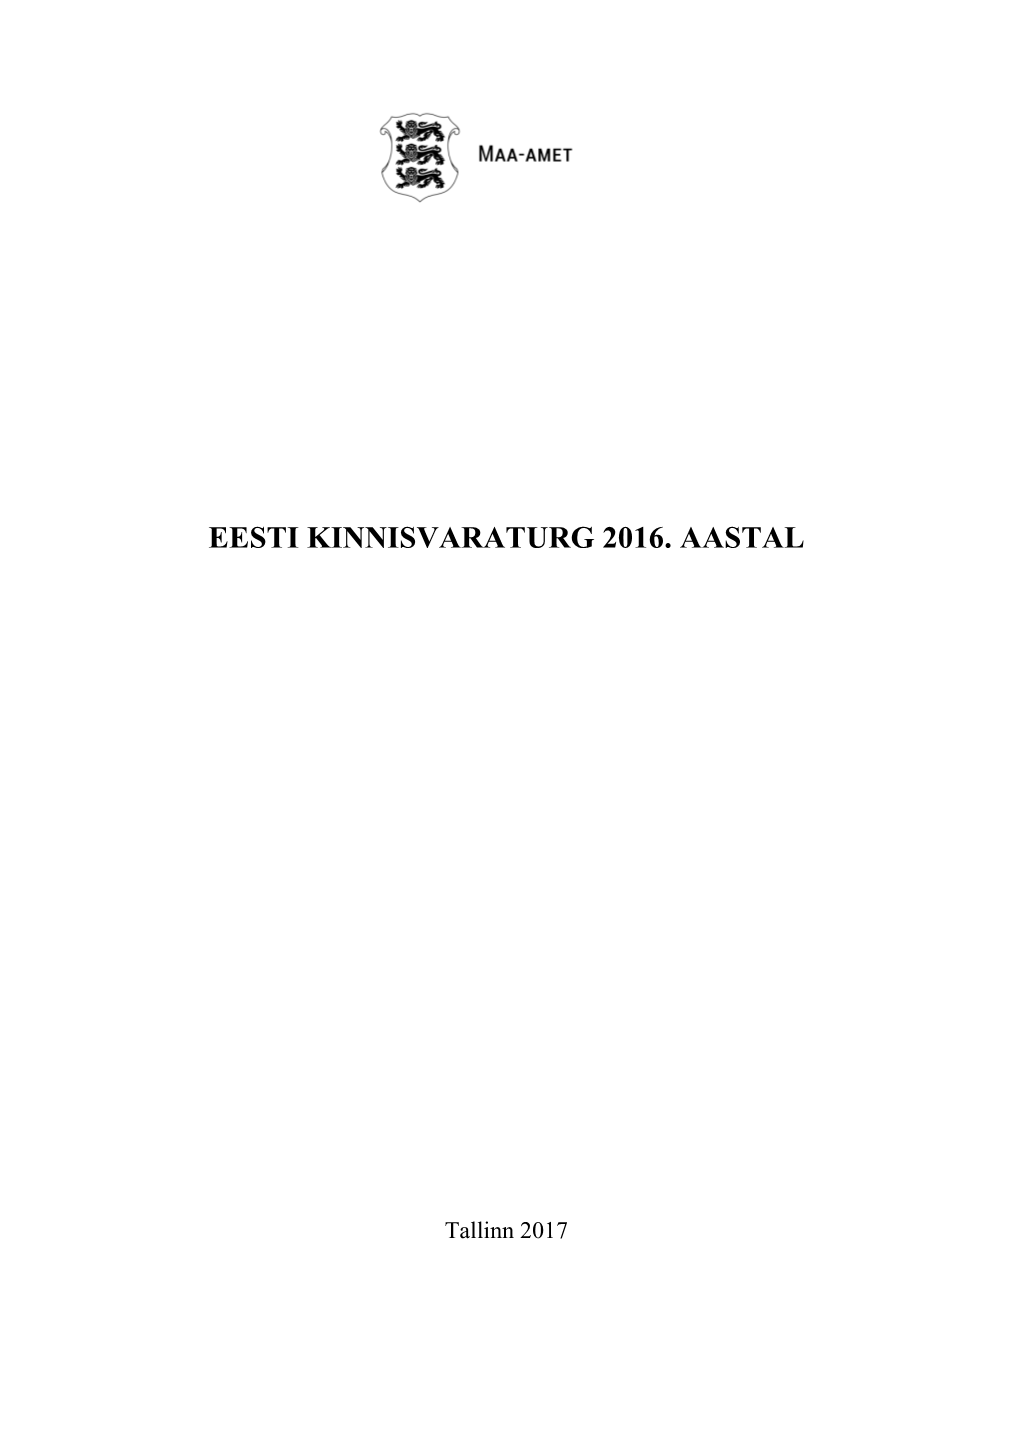 Eesti Kinnisvaraturg 2016. Aastal